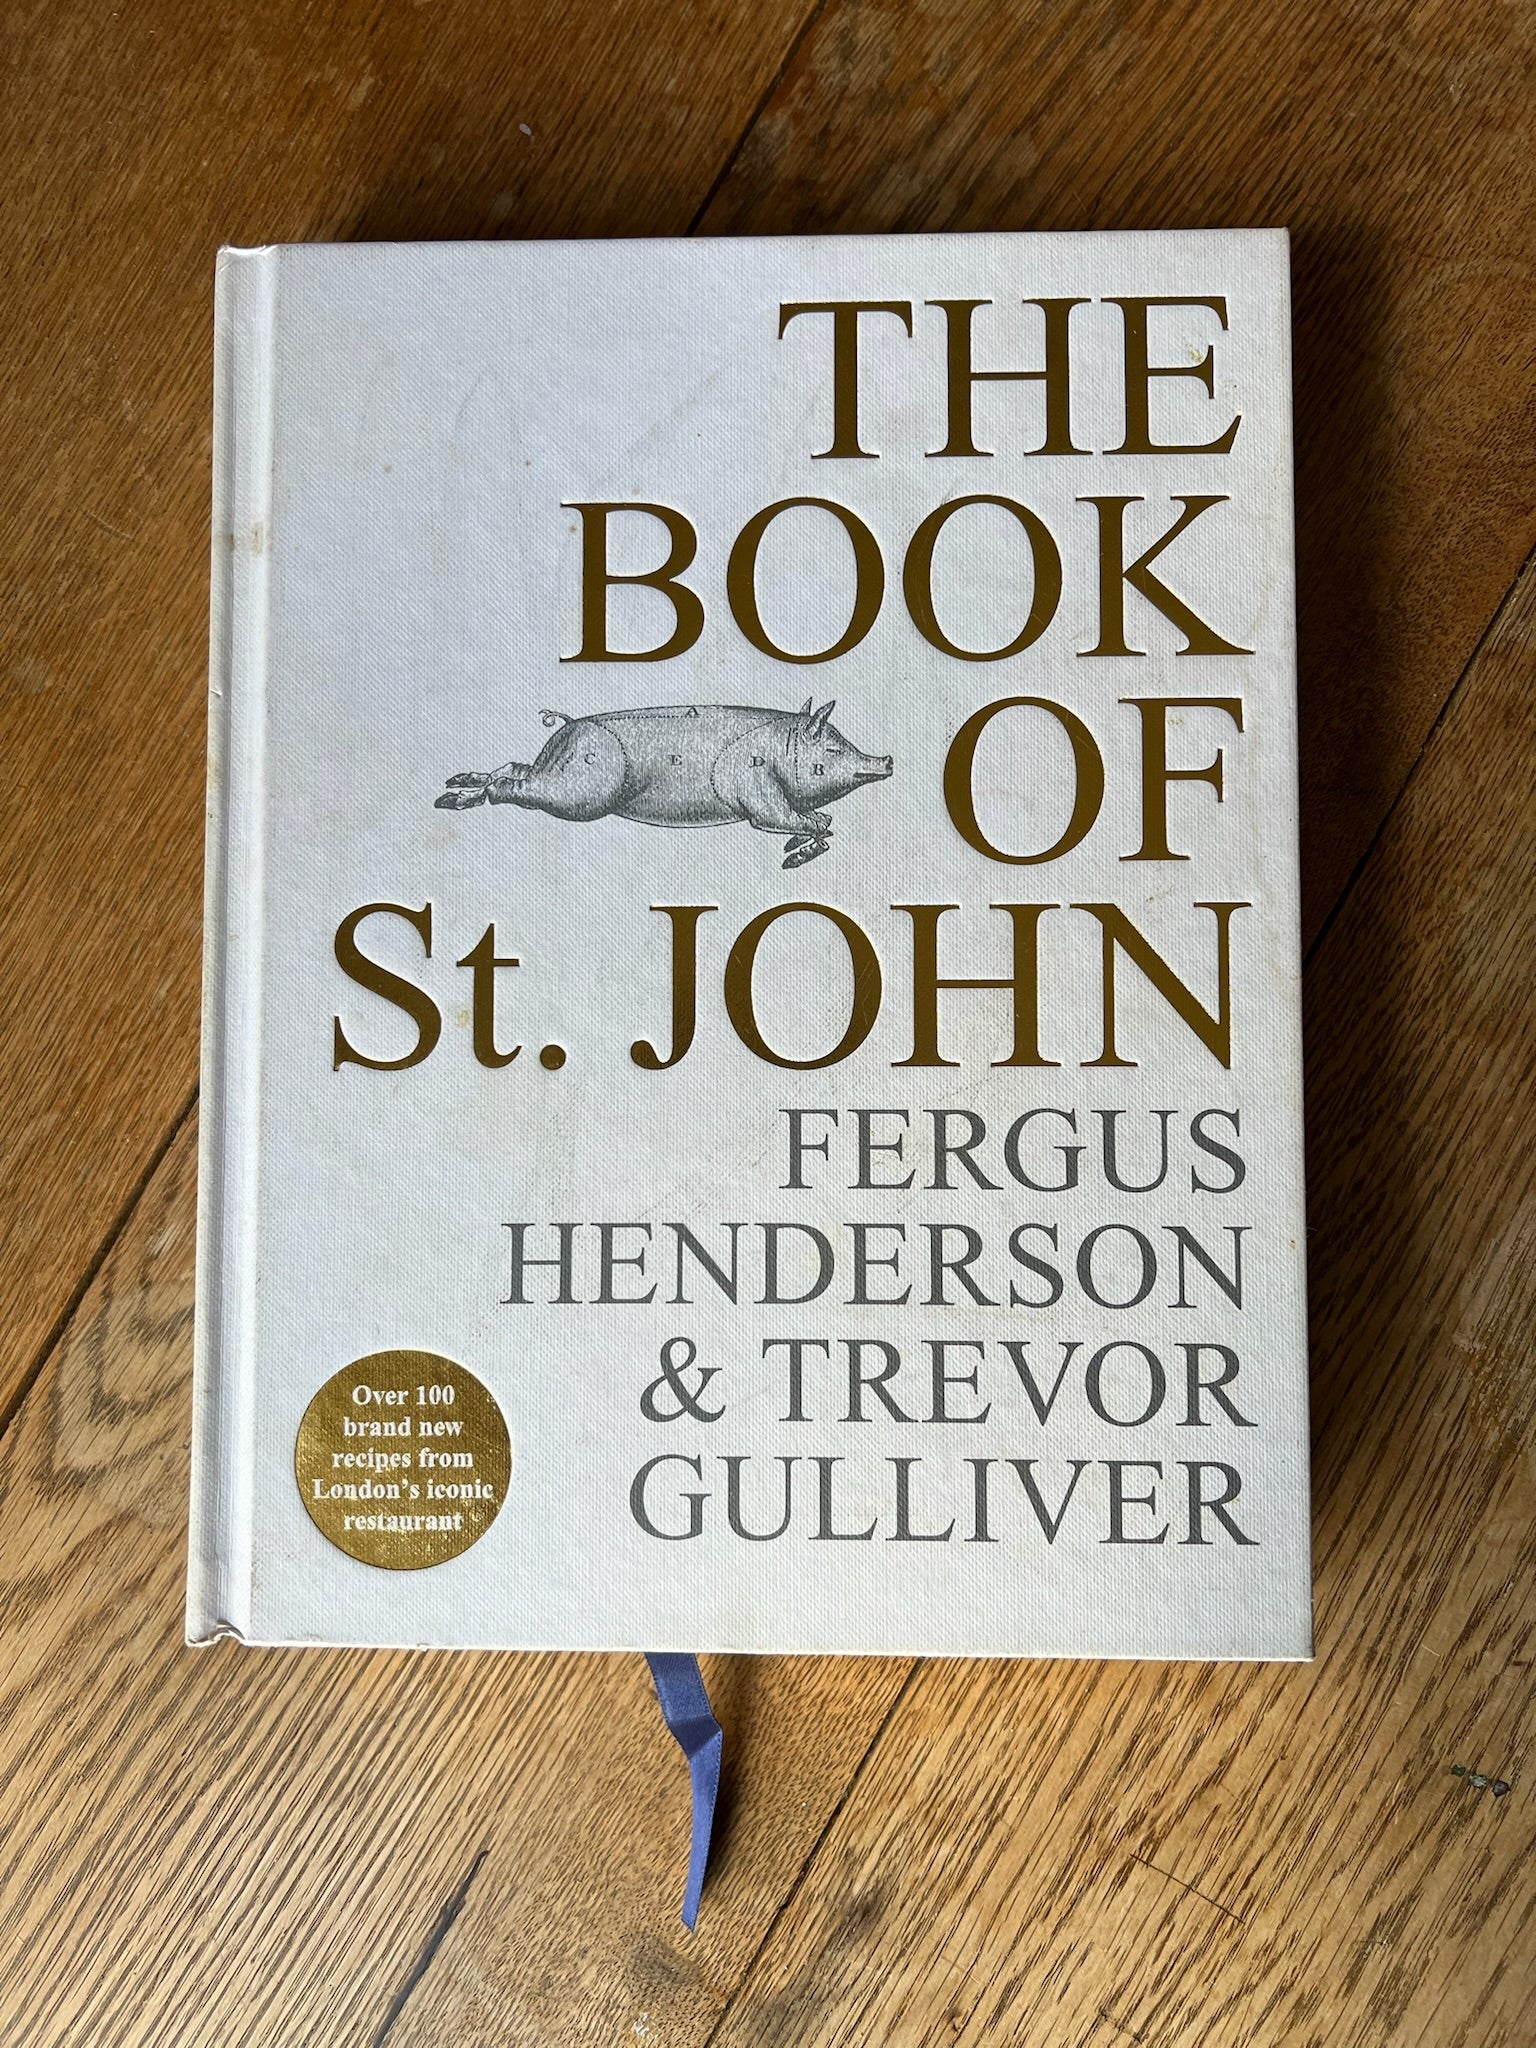 “THE BOOK OF St JOHN” Fergus Henderson & Trevor Gulliver